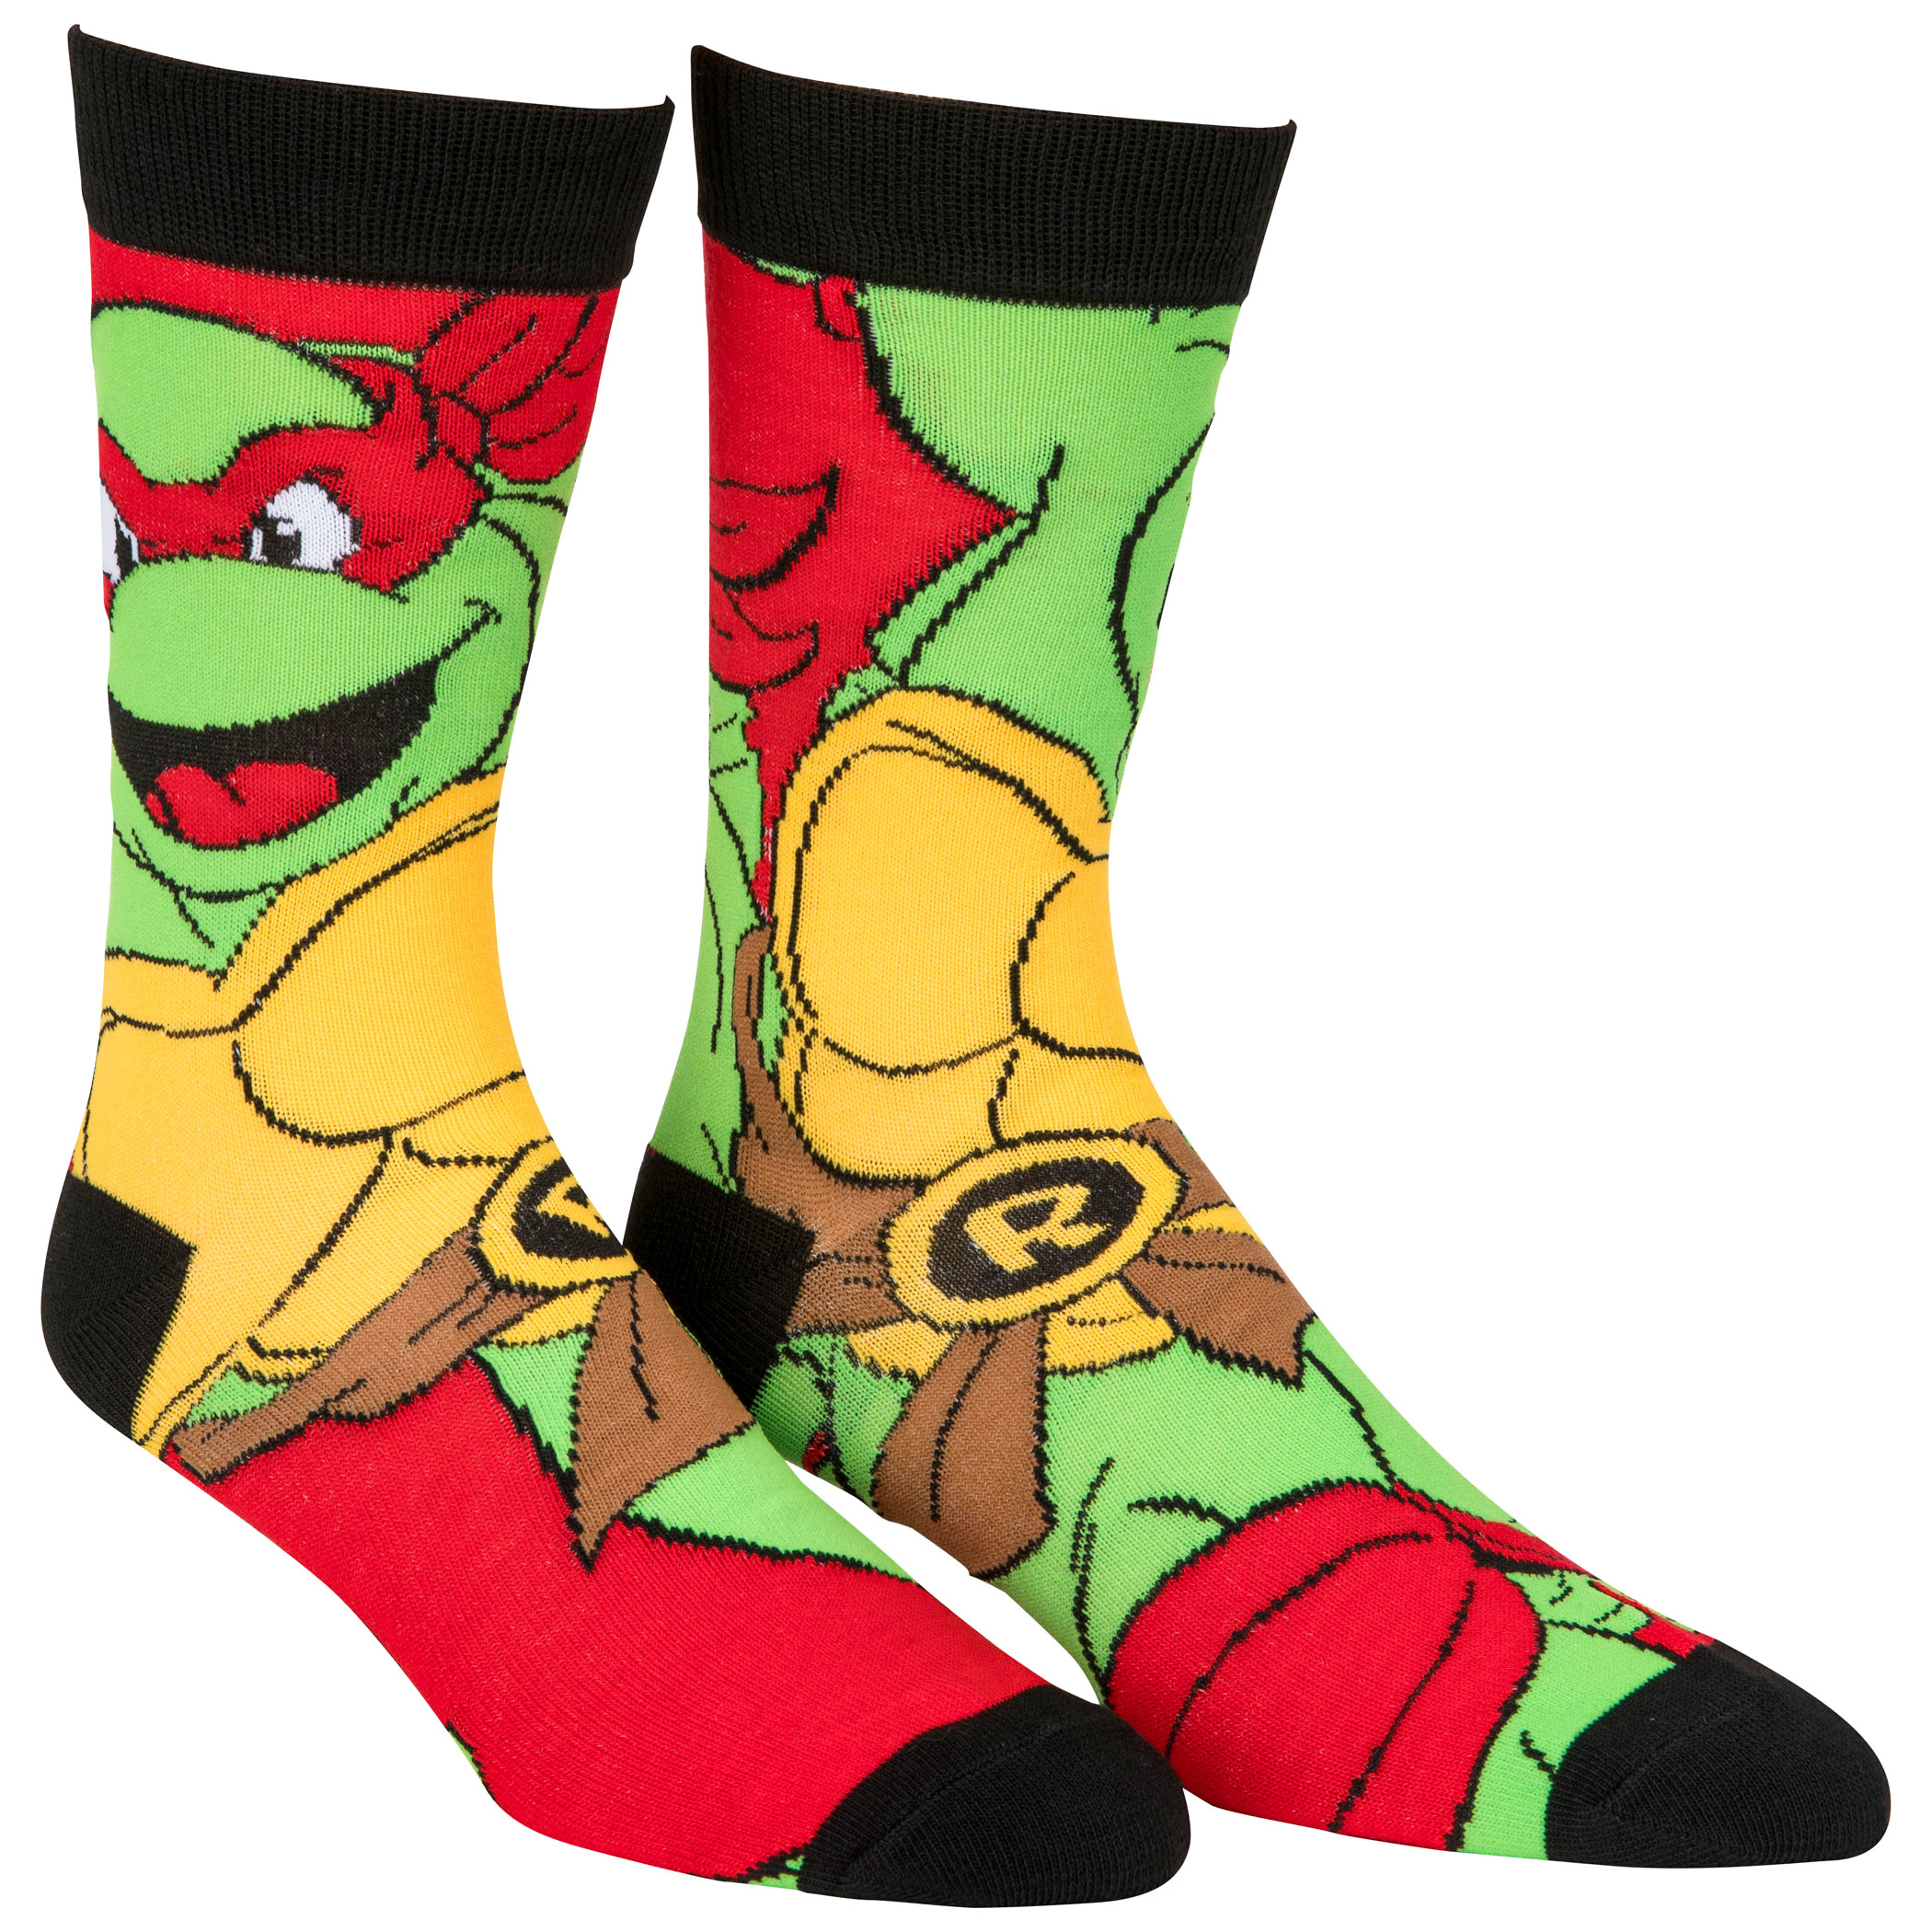 Teenage Mutant Ninja Turtles Characters 6-Pack Crew Socks